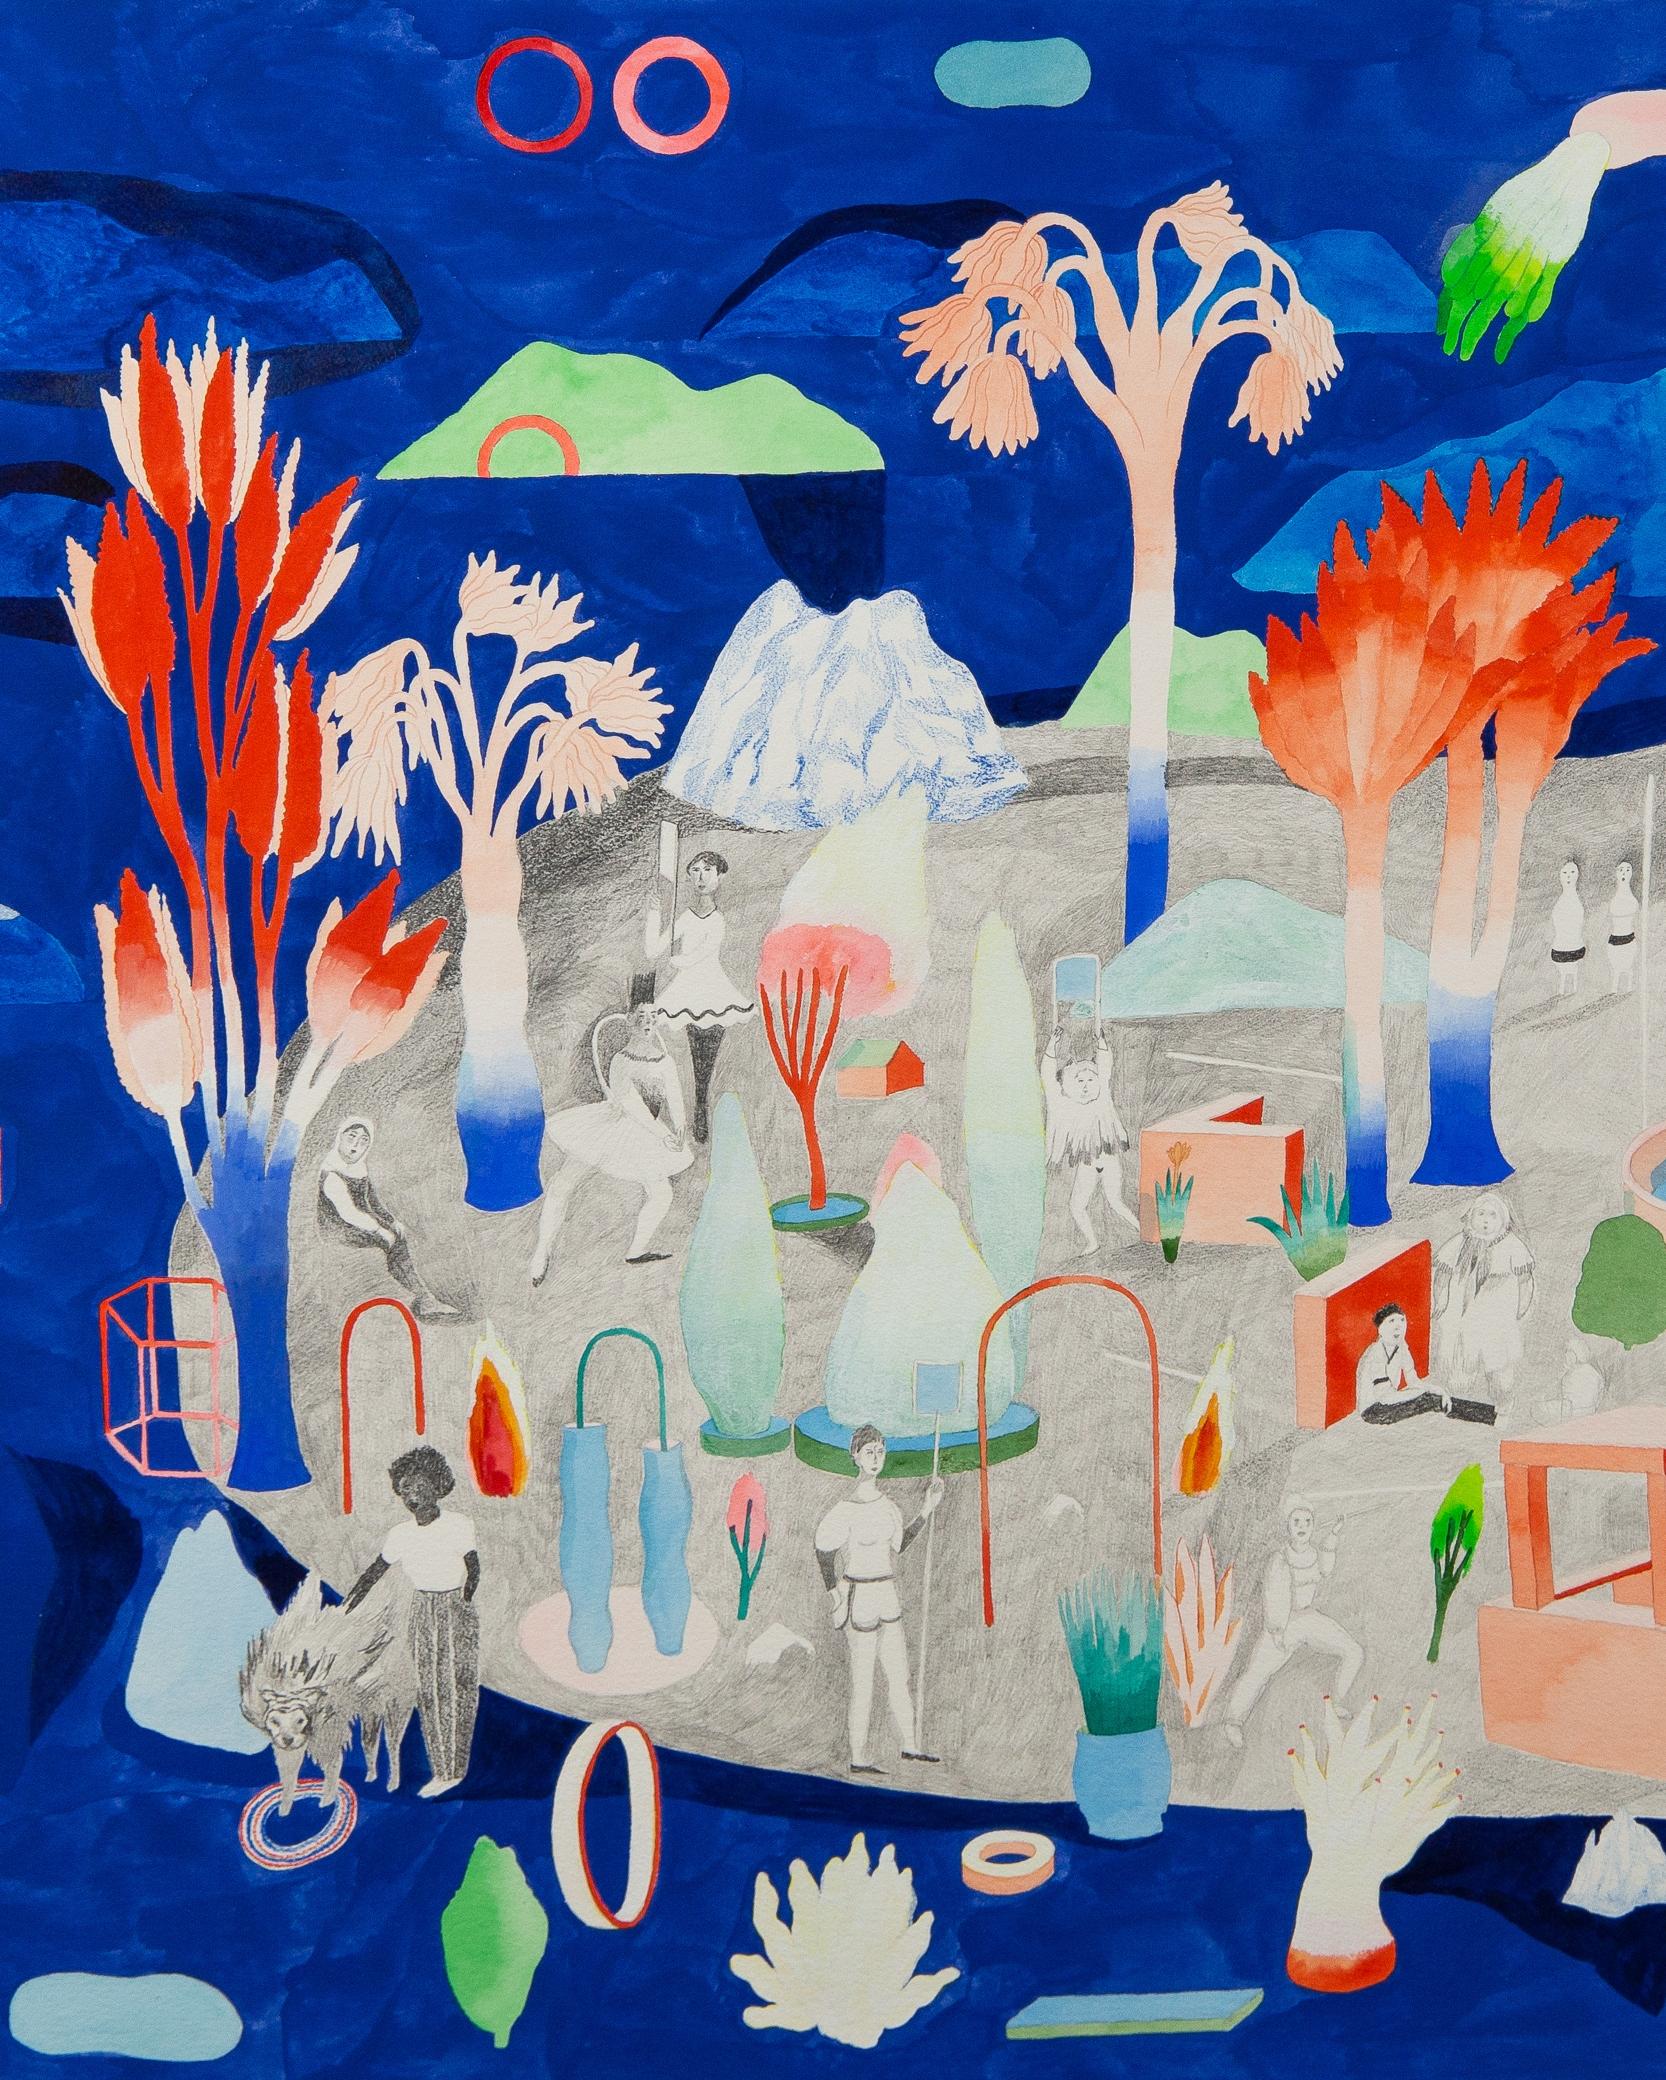 Gouache, crayon de couleur et graphite sur papier
Signé en bas à droite
Travail unique

1 / Hélène DUCLOS, 2016 - Déclaration de l'artiste

